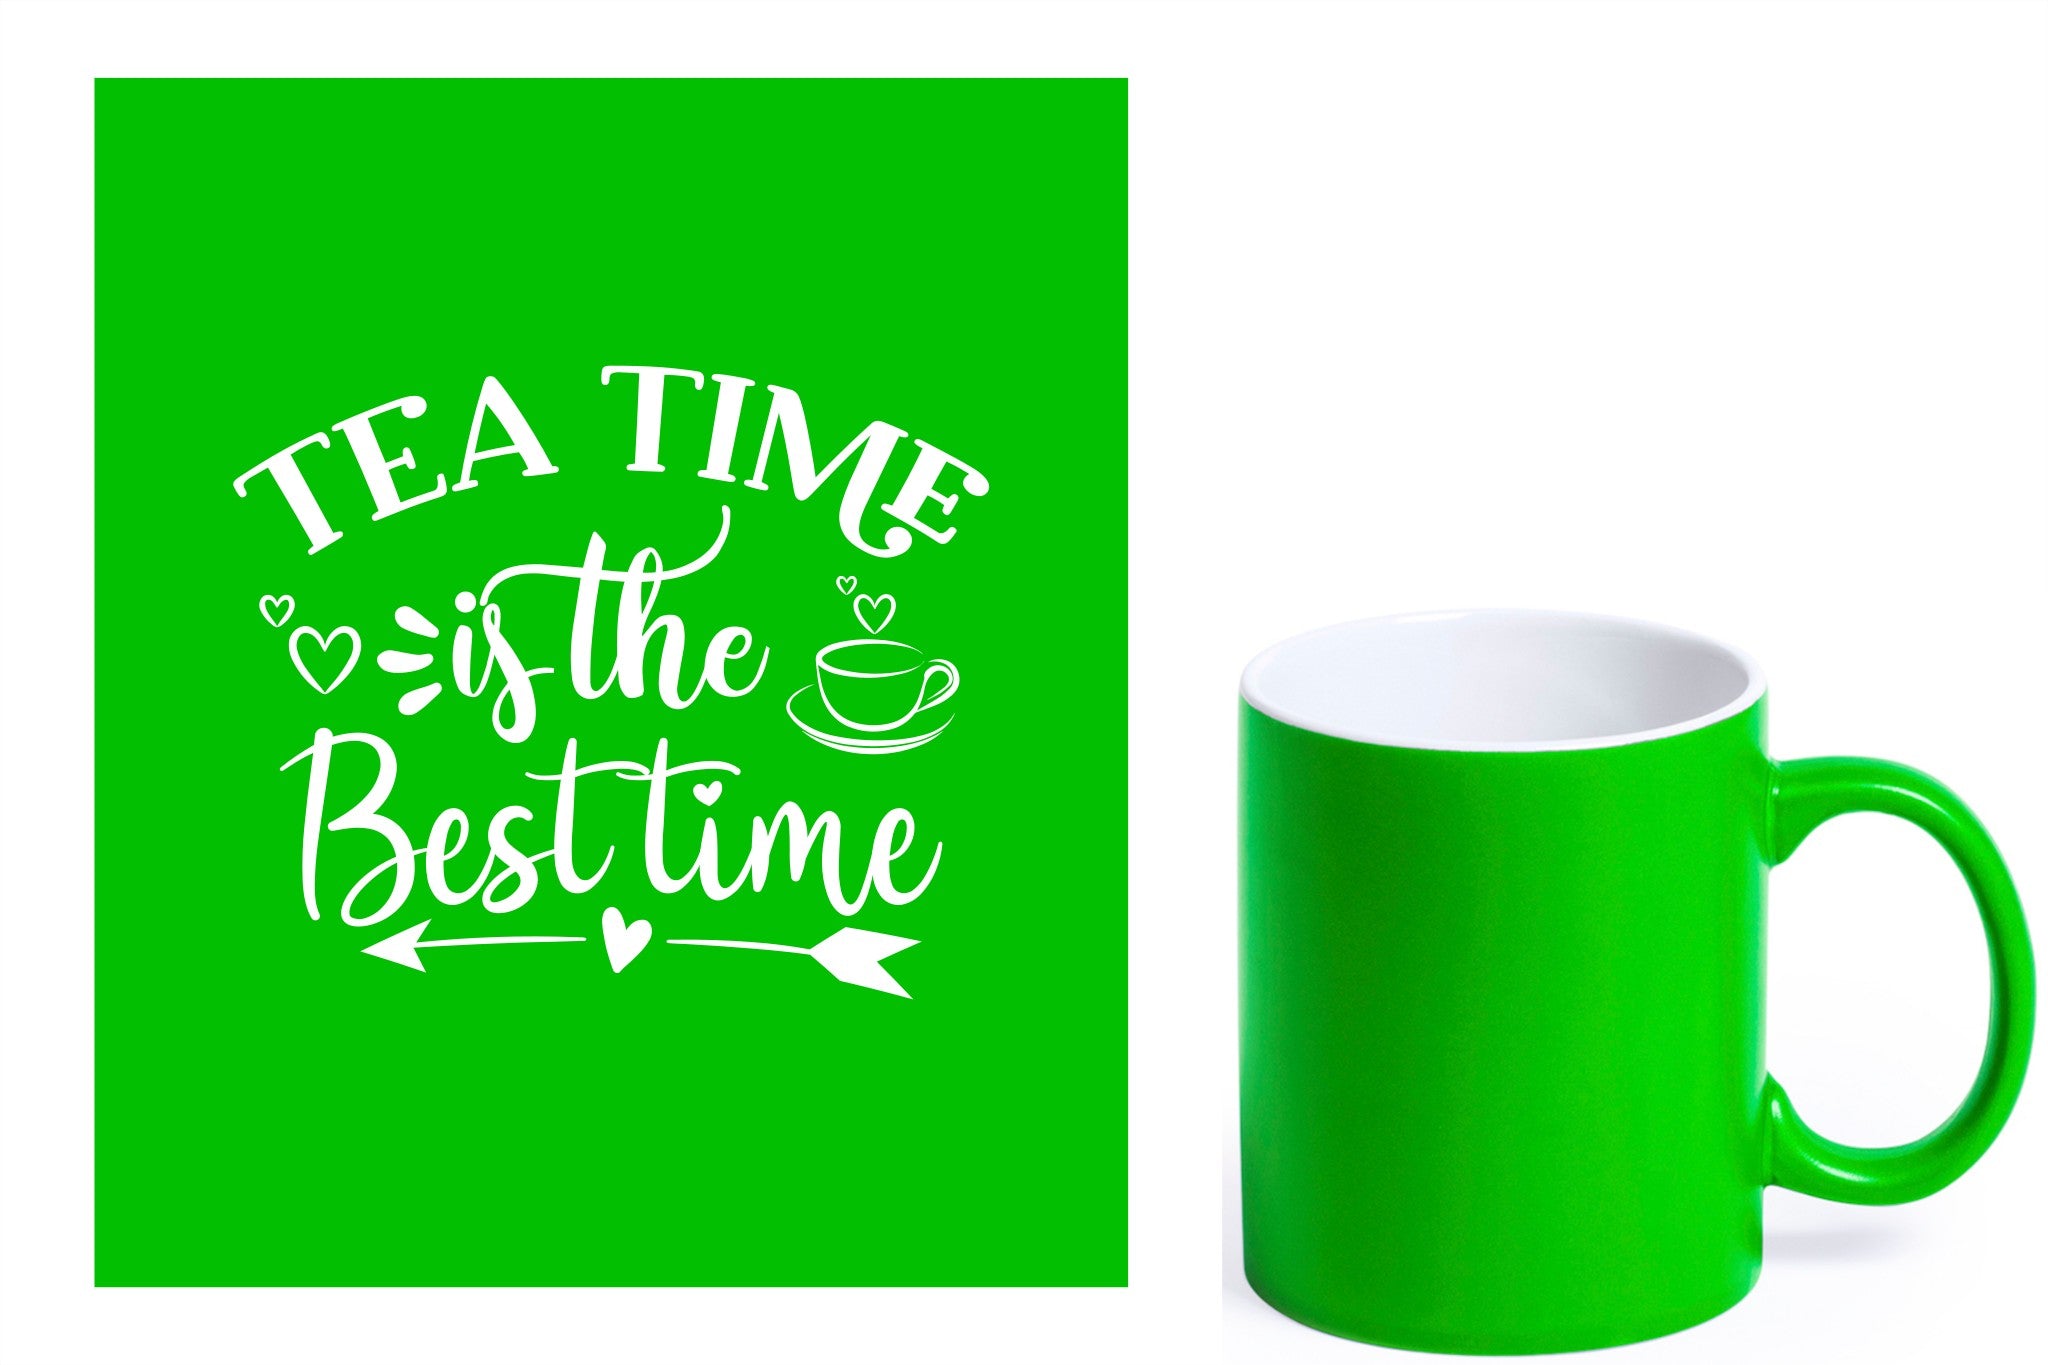 groene keramische mok met witte gravure  'Tea time is the best time'.